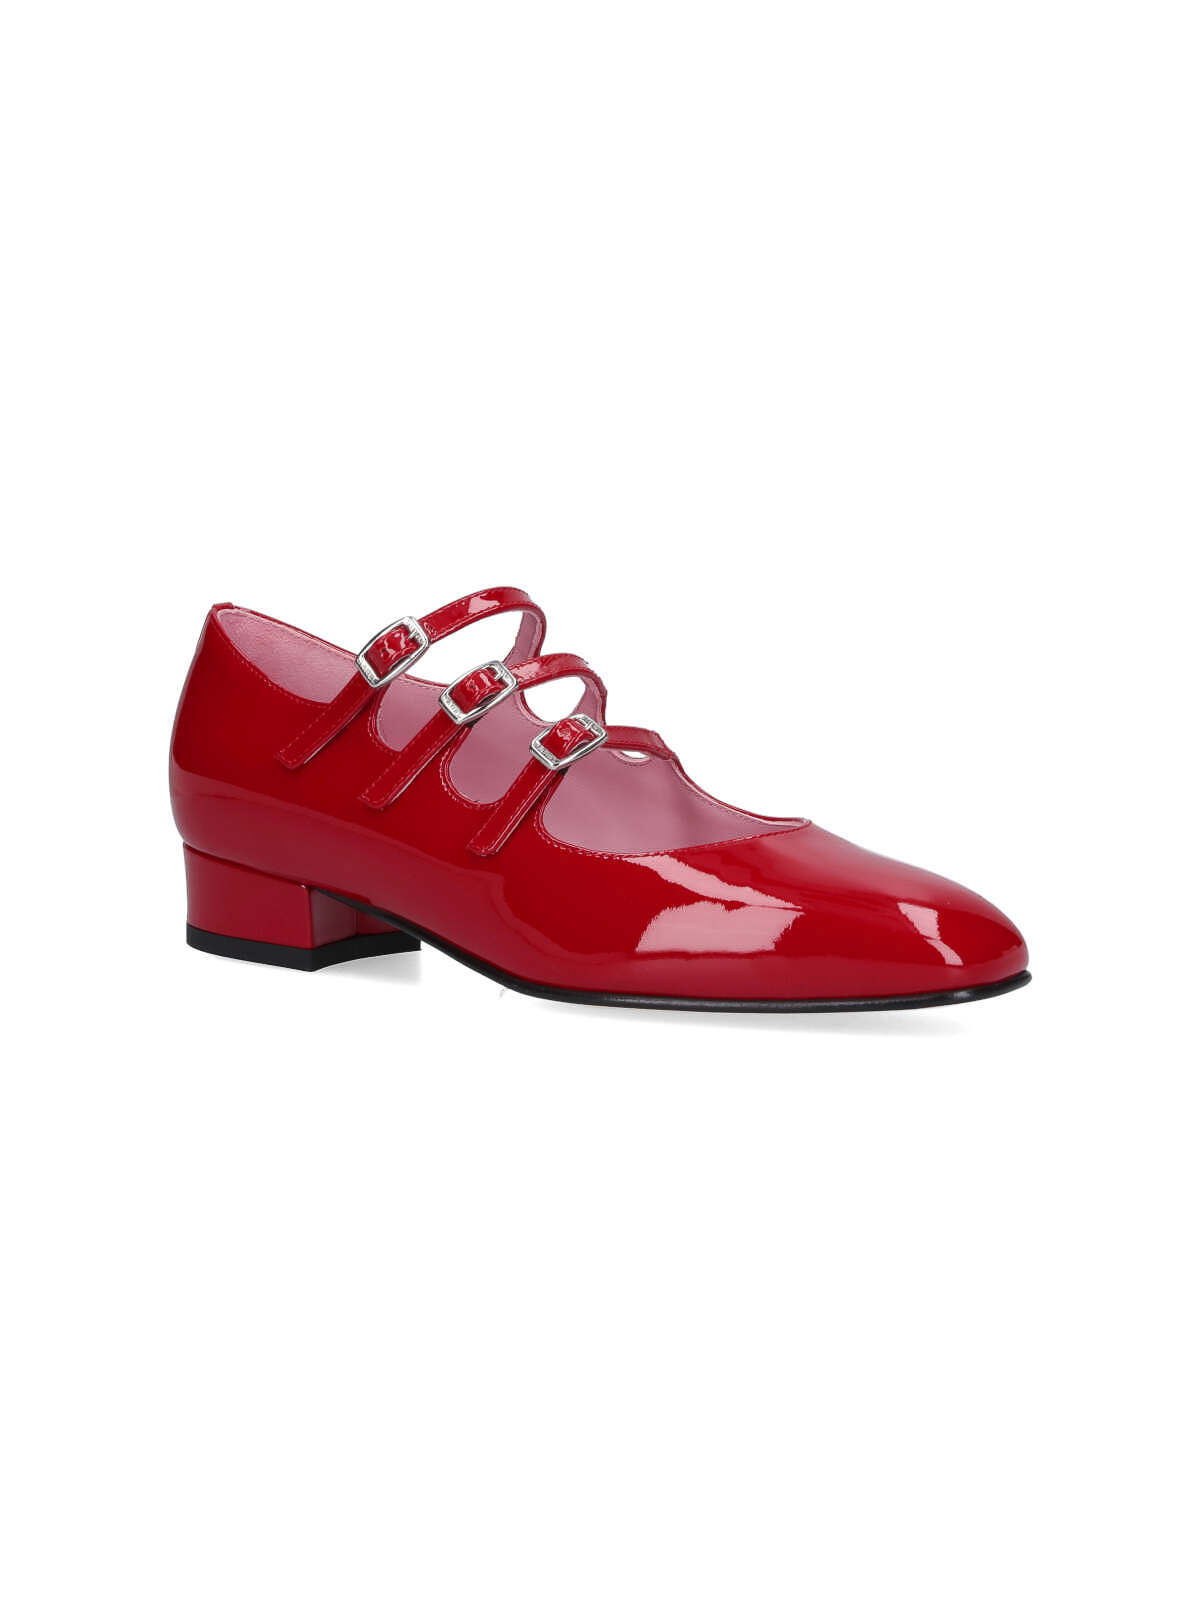 Shop Carel Paris Zapatos De Salón - Ariana In Red